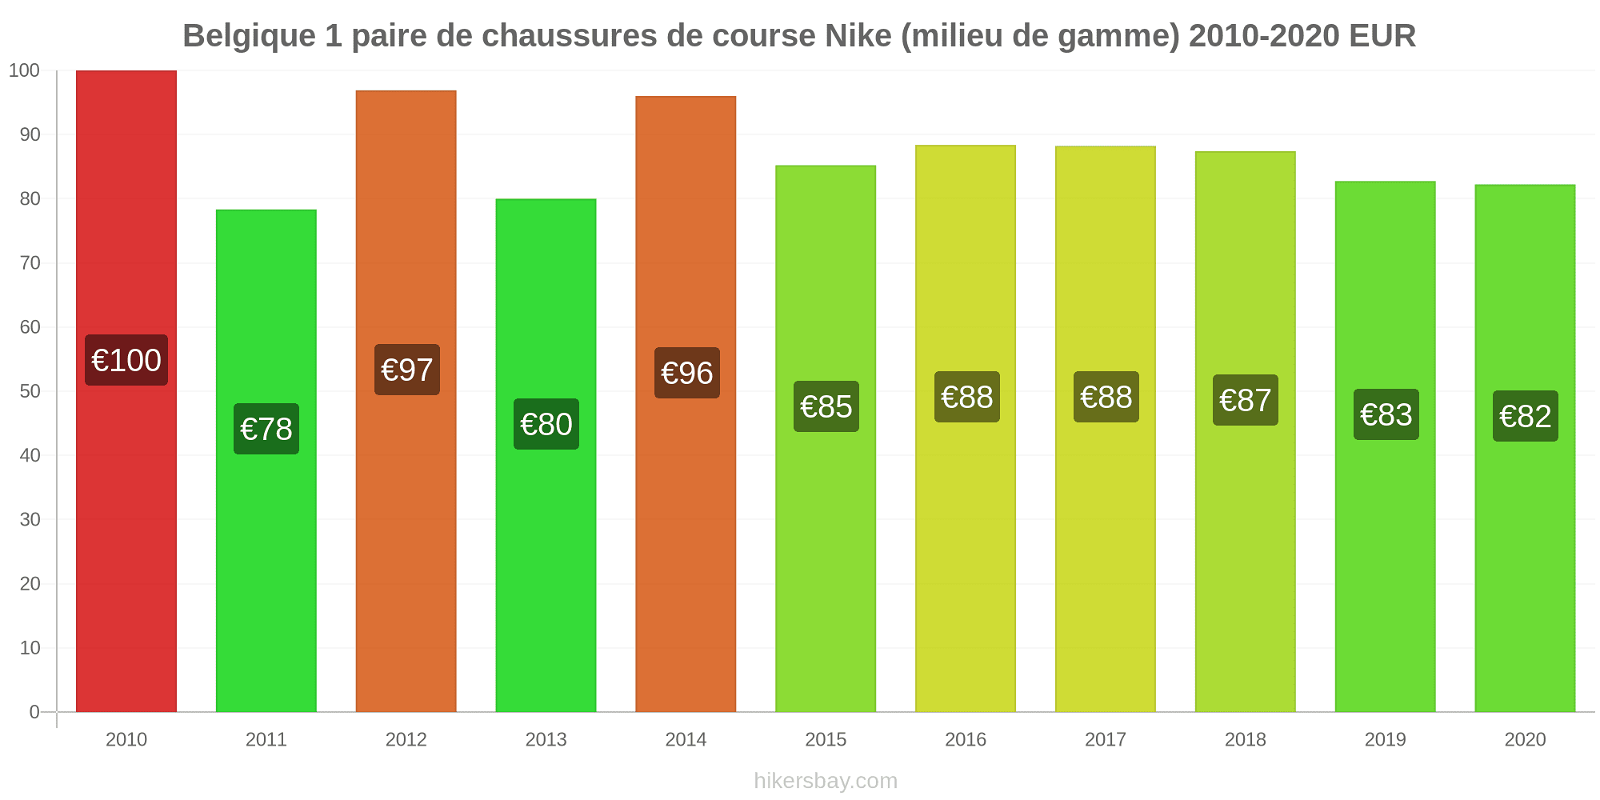 Belgique changements de prix 1 paire de chaussures de course Nike (milieu de gamme) hikersbay.com